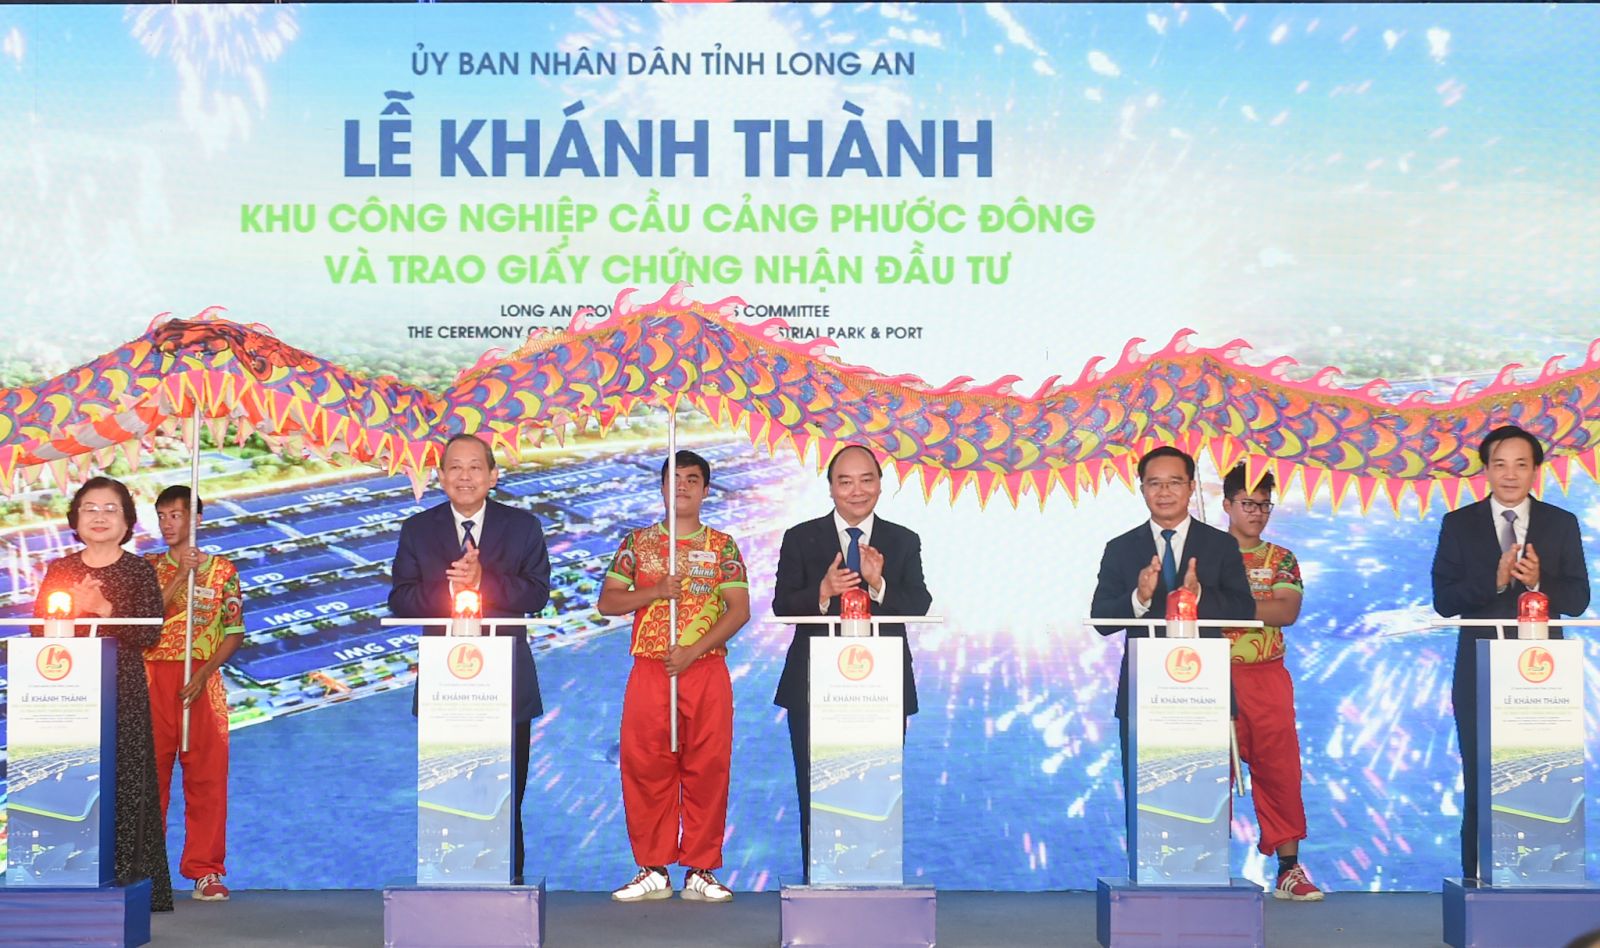 Thủ tướng Nguyễn Xuân Phúc, Phó Thủ tướng Trương Hòa Bình cùng các đại biểu dự Lễ khánh thành Khu công nghiệp Cầu cảng Phước Đông